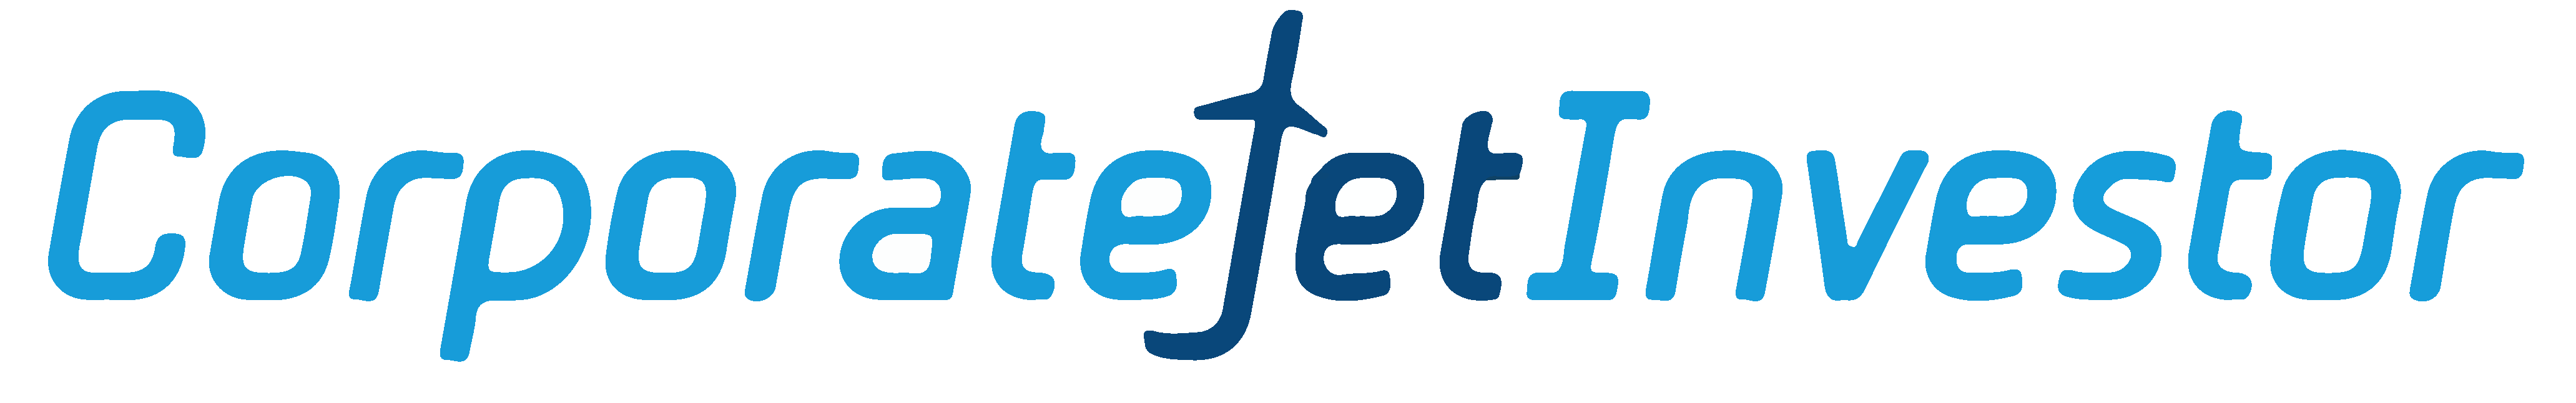 Corporate Jet Investor